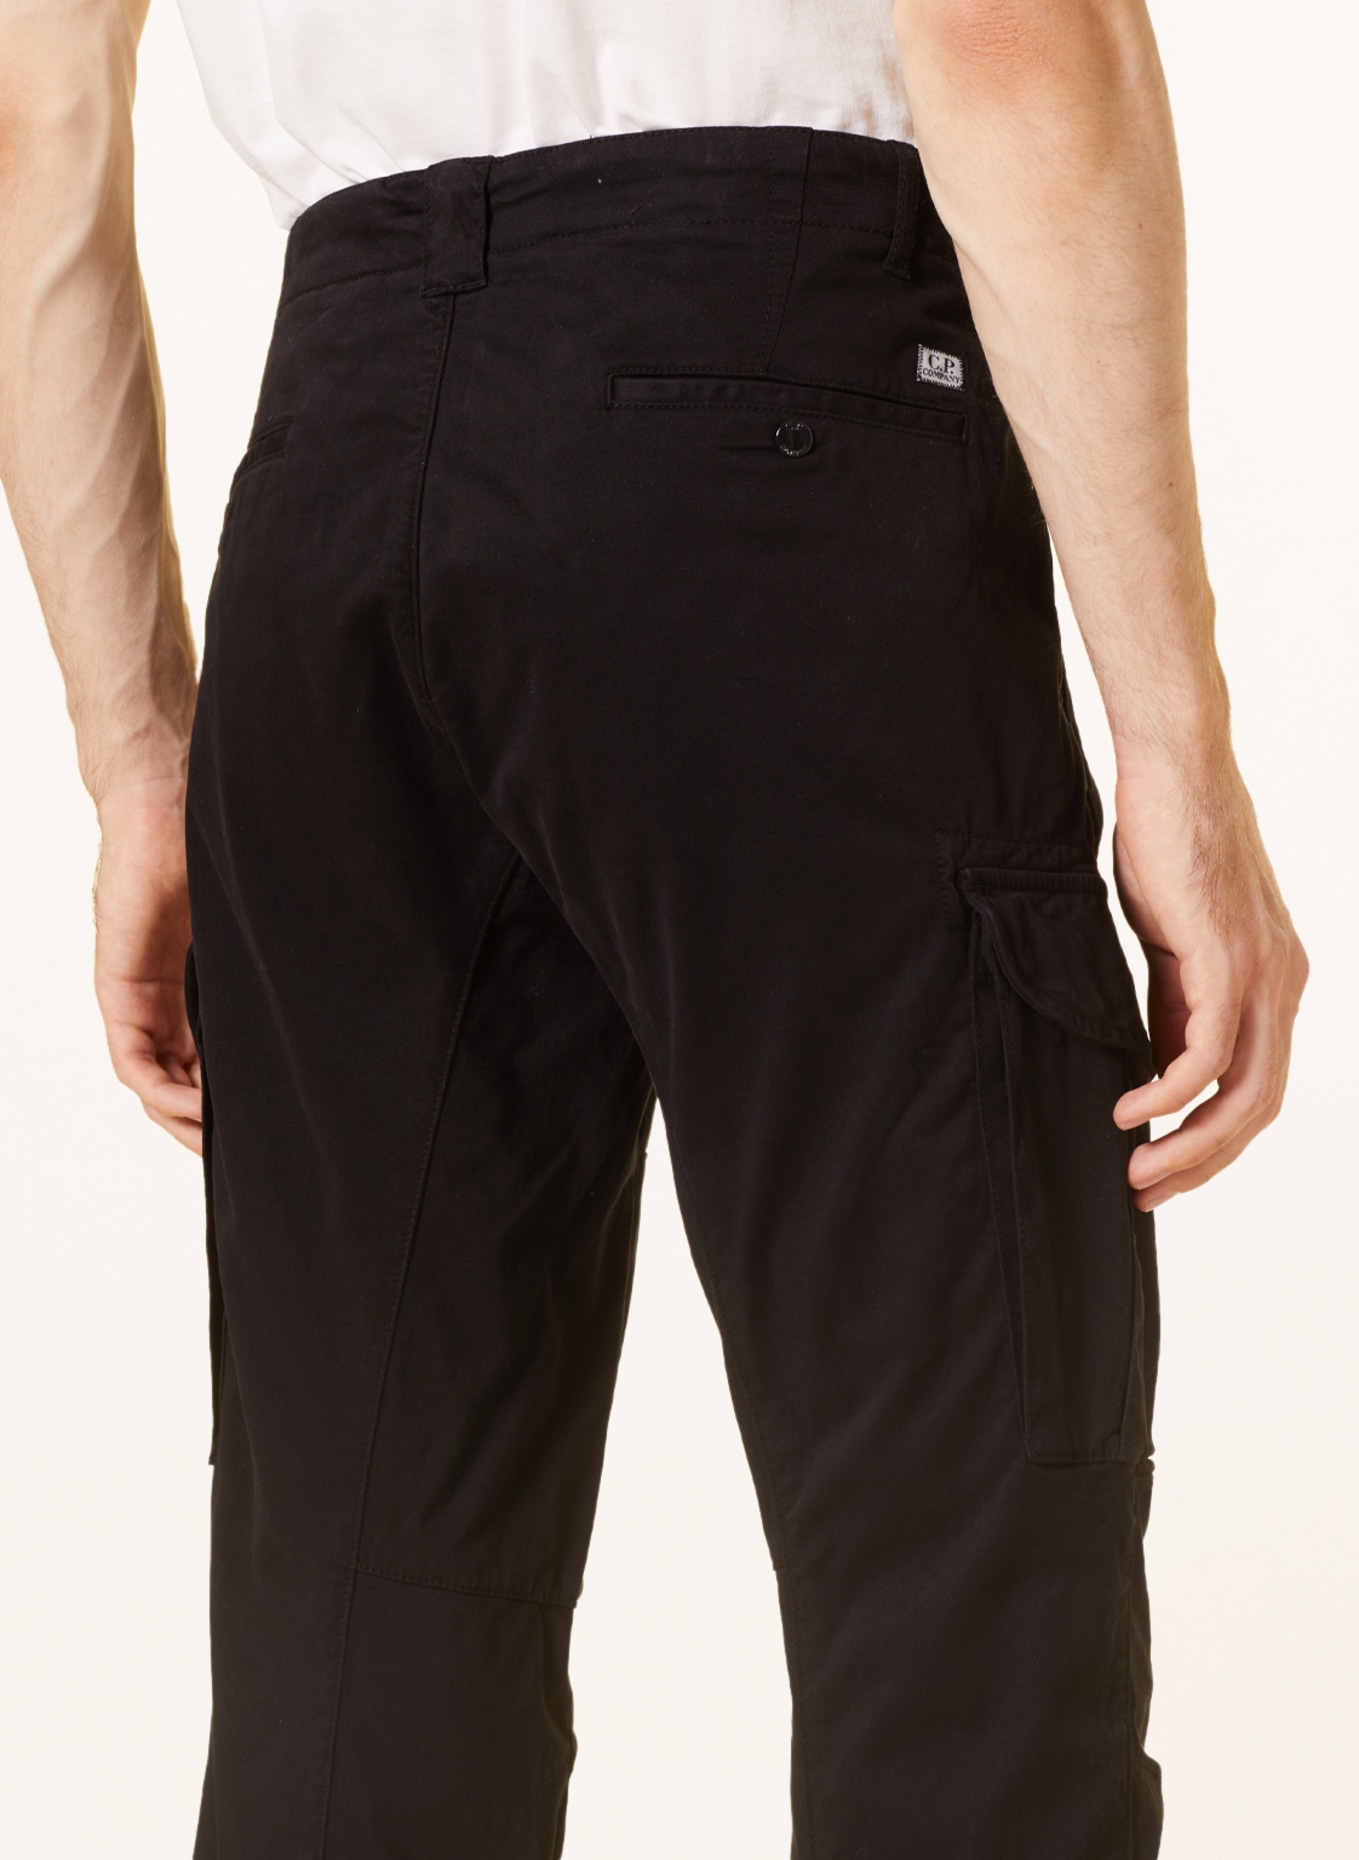 C.P. COMPANY Cargo pants ergonomic fit, Color: BLACK (Image 6)